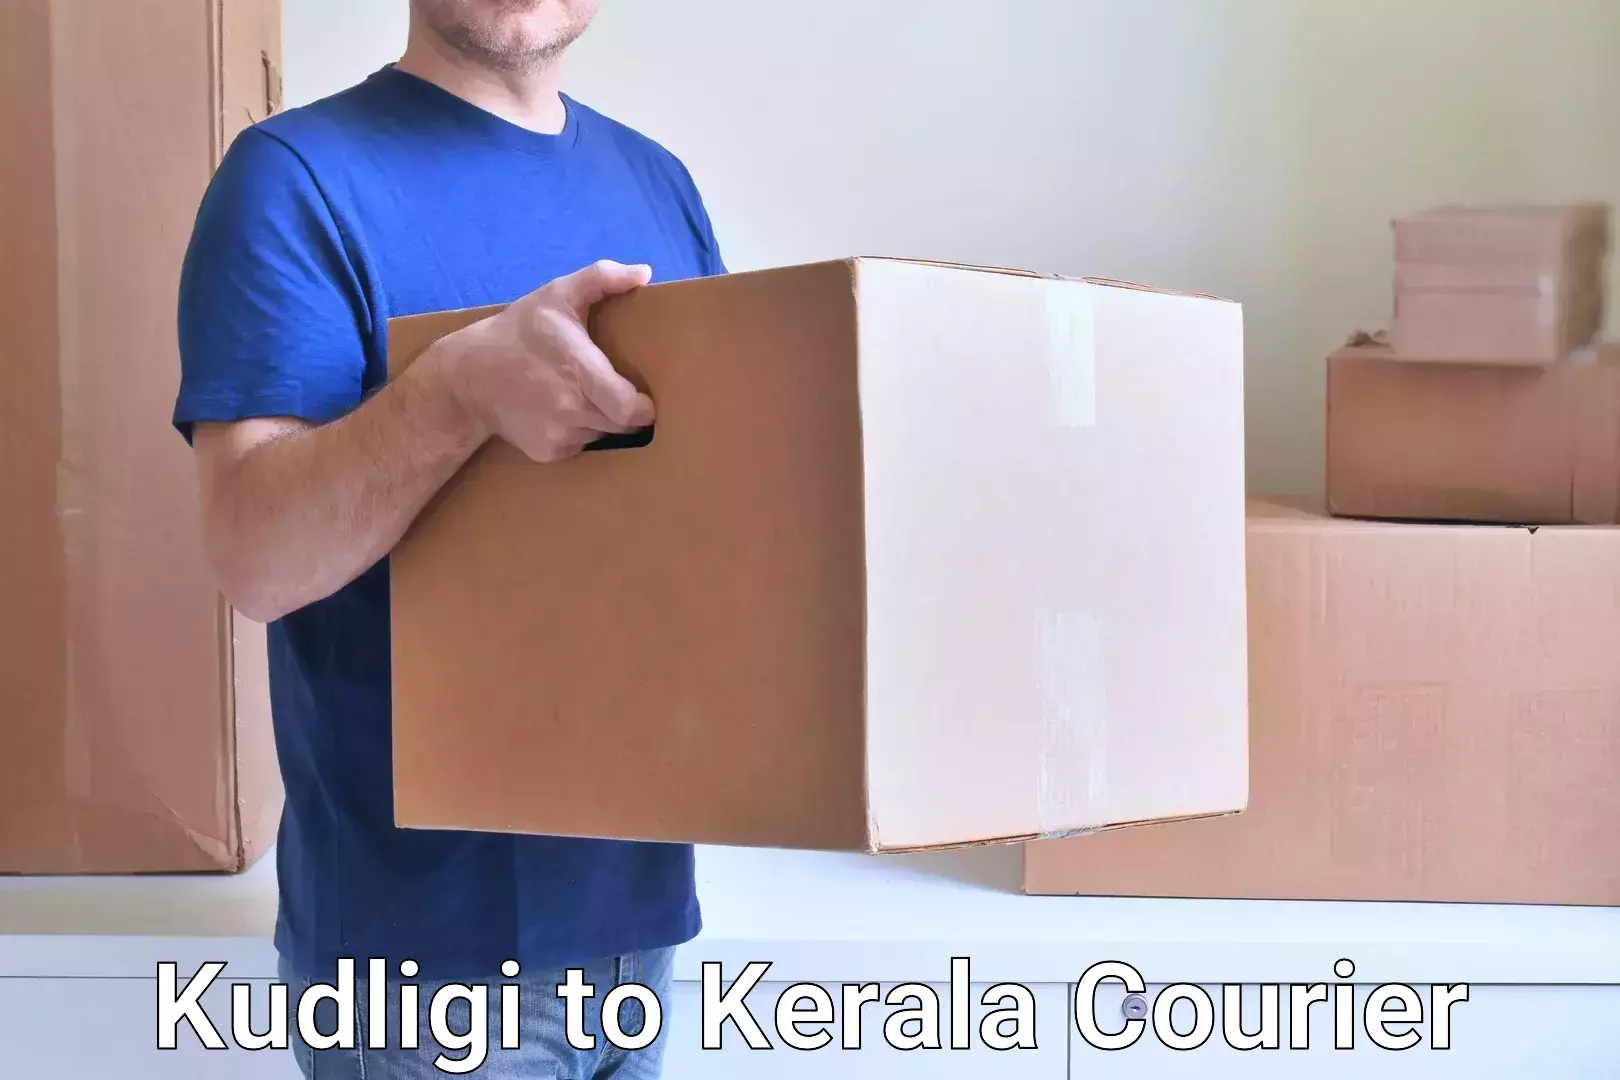 Efficient parcel tracking Kudligi to Kerala